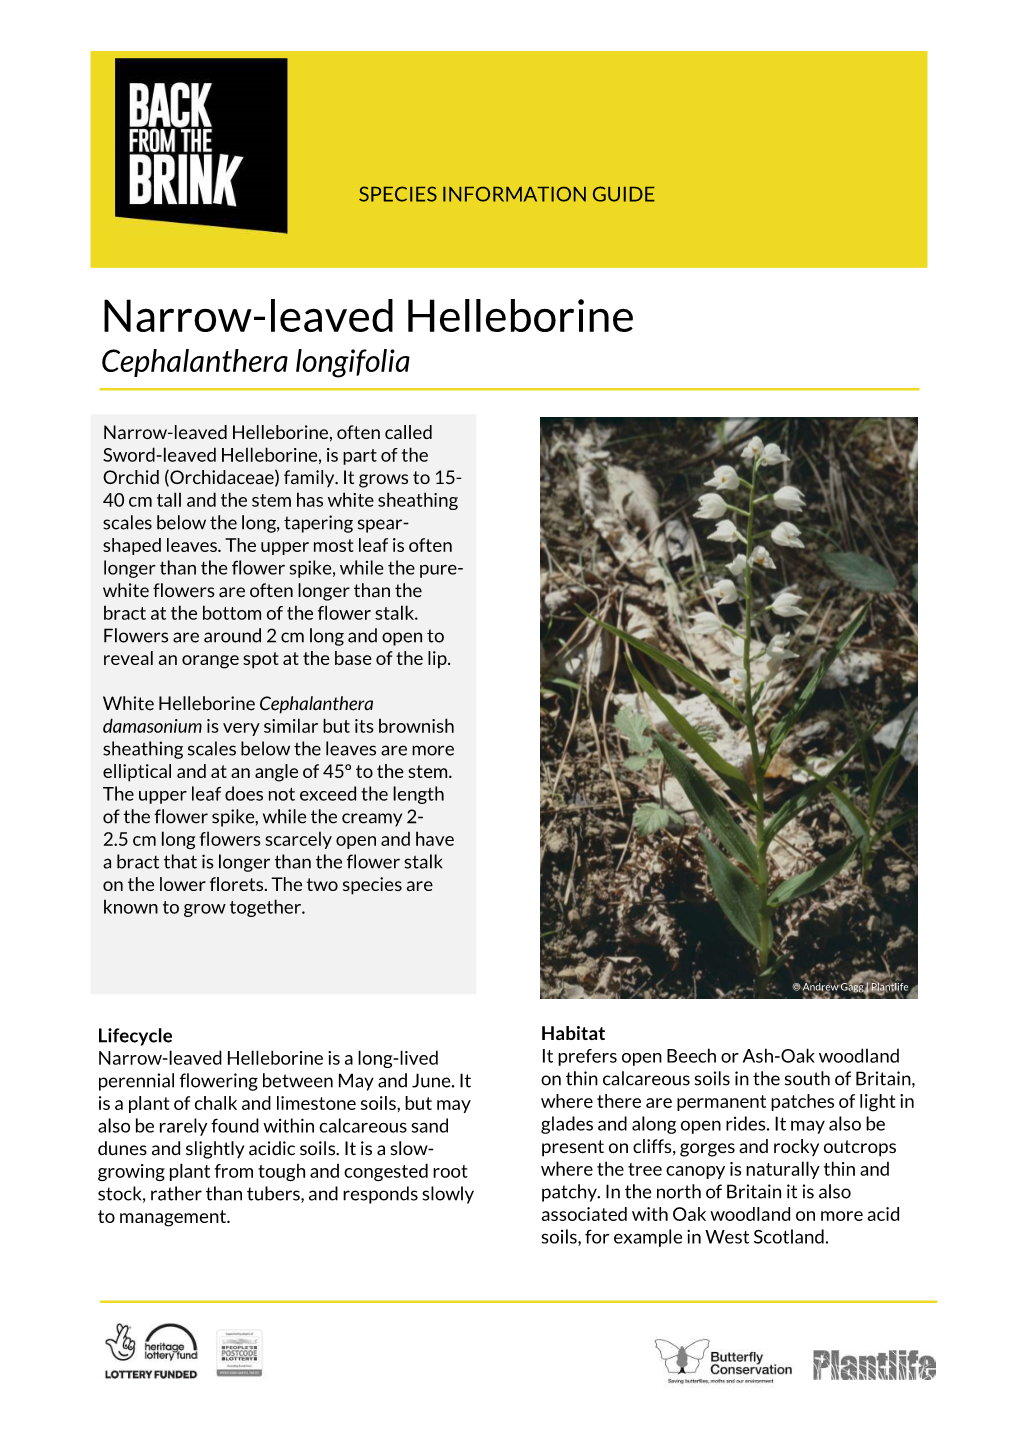 Narrow-Leaved Helleborine